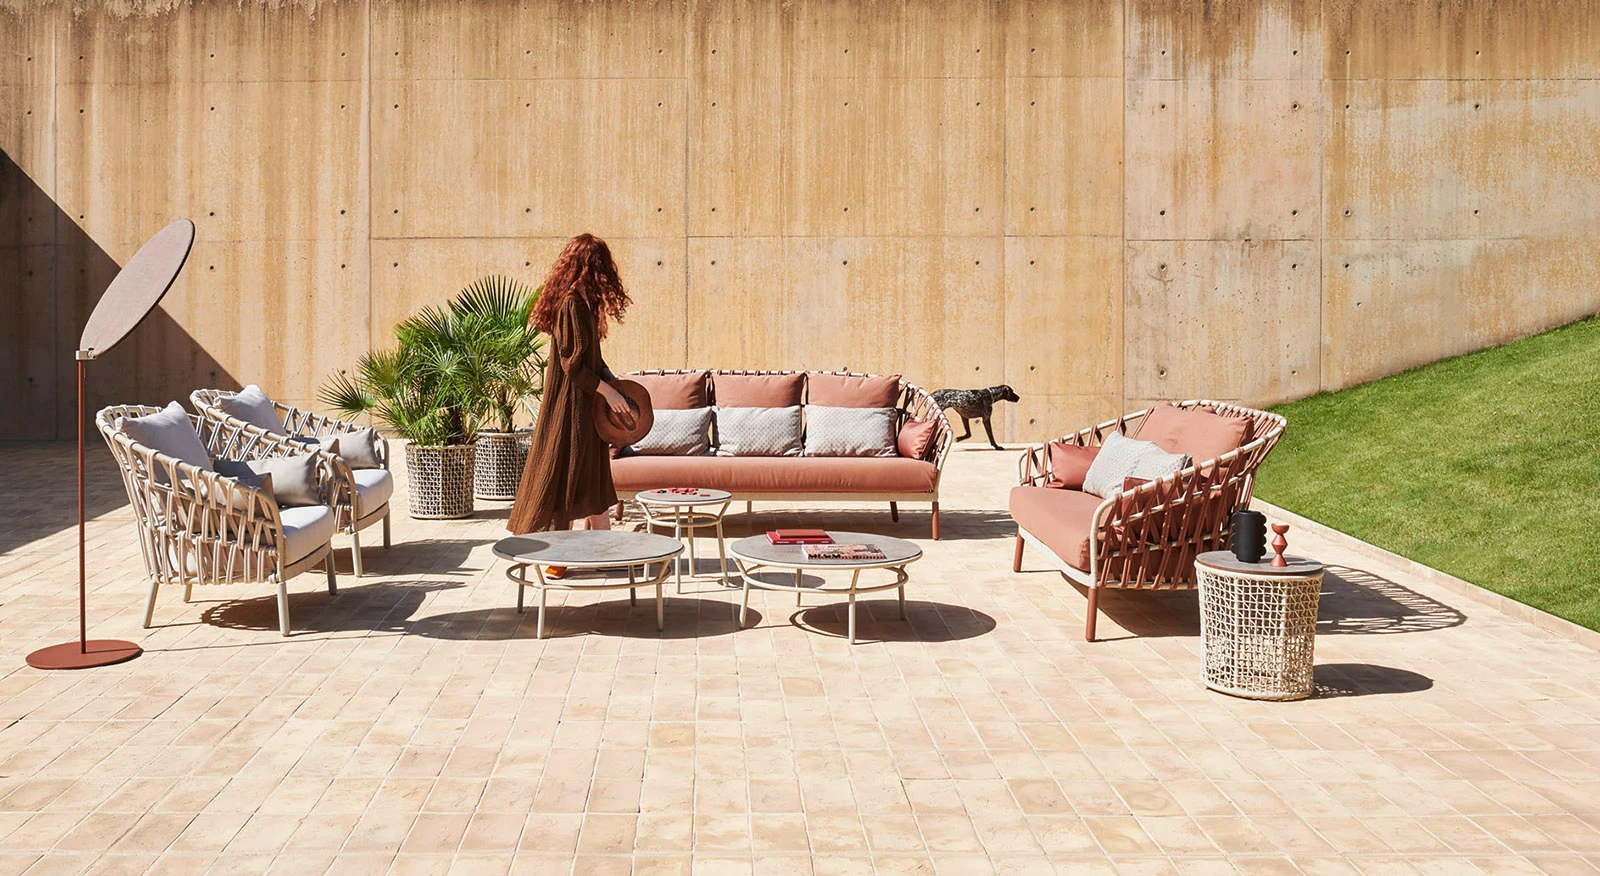 Harmonie designu a přírody - kolekce Emma Cross od Varaschin v teplých růžových tónech harmonicky doplňují minimalistické prostředí s betonovou stěnou. Elegantní nábytek vytváří dokonalé místo pro odpočinek a přitom zůstává v souladu s přírodou. Tento venkovní set-up poskytuje ideální prostor nejen pro relaxaci, ale i pro stylové společenské setkání. 